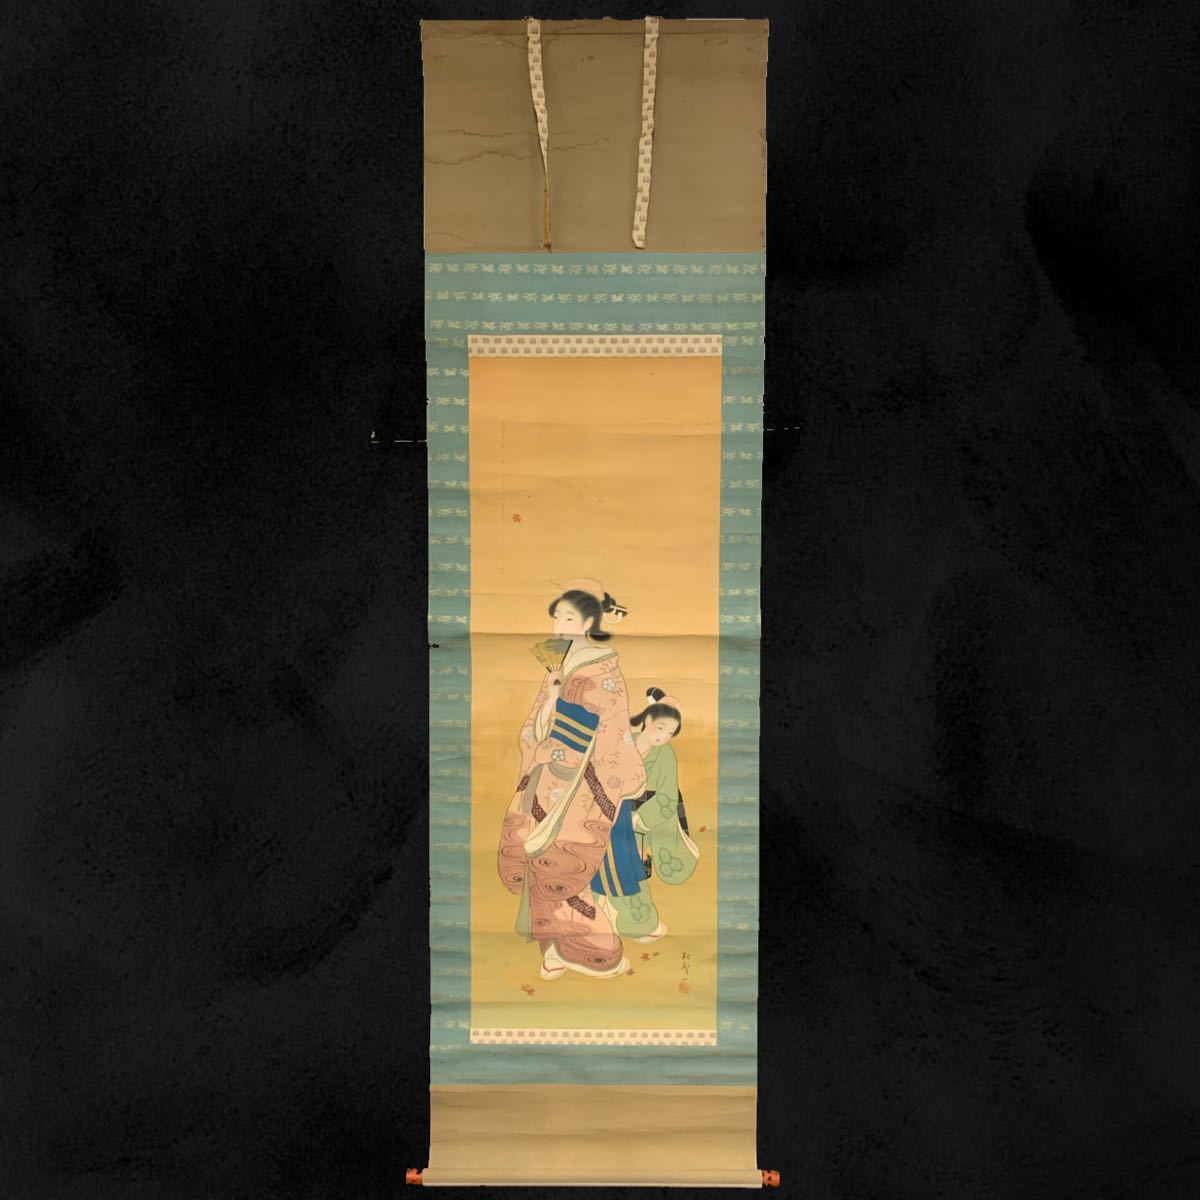 [복사본] (하기 49년) 겐로쿠미인족 족자 비단 미녀 화함 약 197 x 56 cm, 그림, 일본화, 사람, 보살